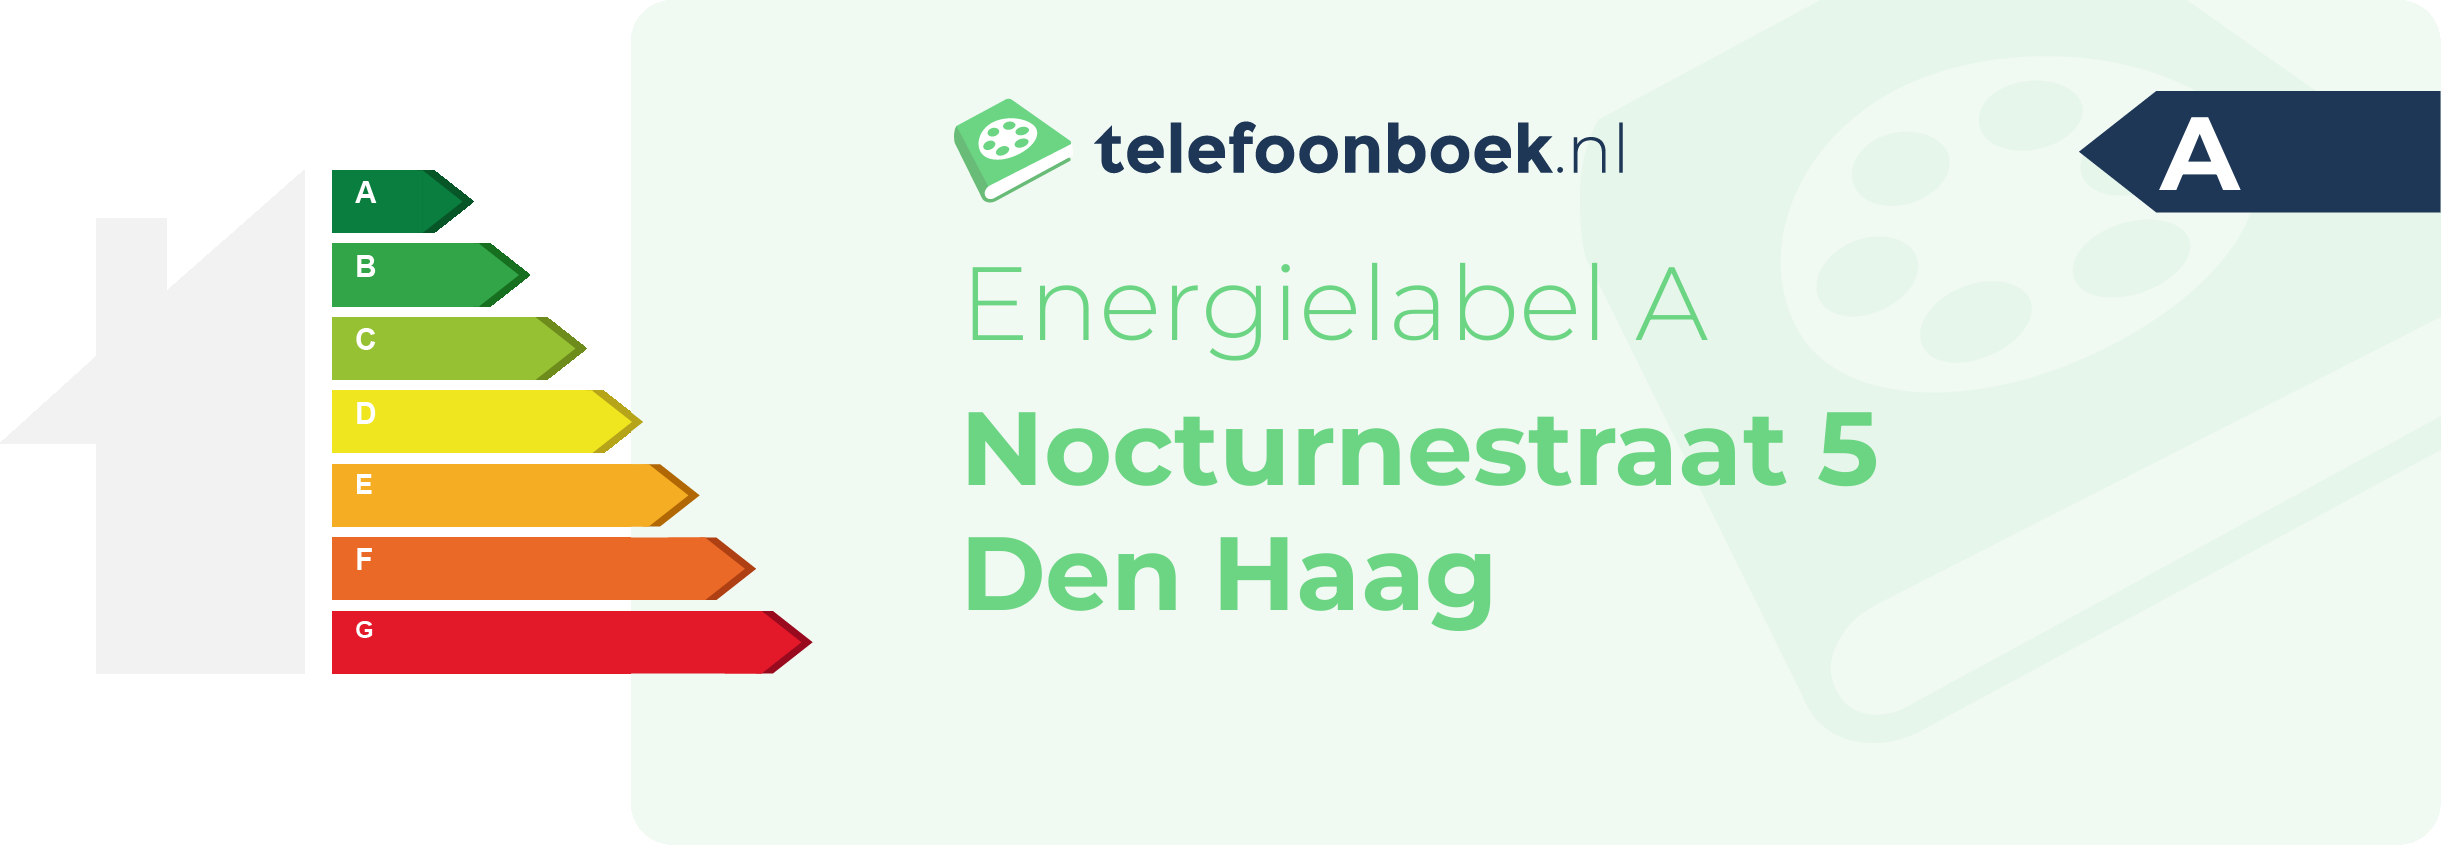 Energielabel Nocturnestraat 5 Den Haag